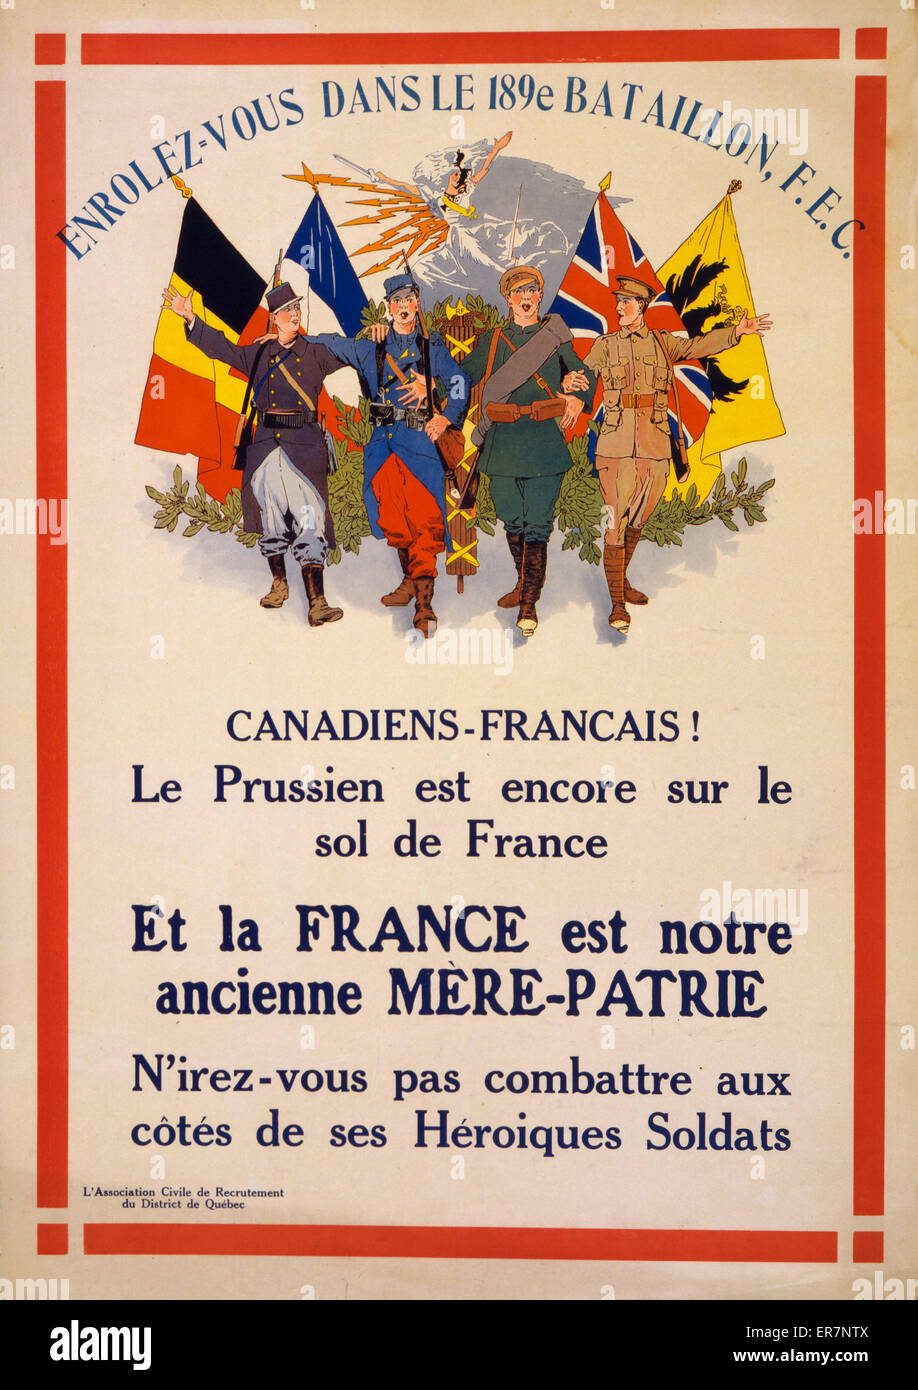 Canadiens-Francais! Le Prussien est encore sur le sol de France  Enrolez-vous dans le 189e Bataillon, FEC. Poster showing soldiers in various uniforms beneath Allied flags. Date 1915. Stock Photo